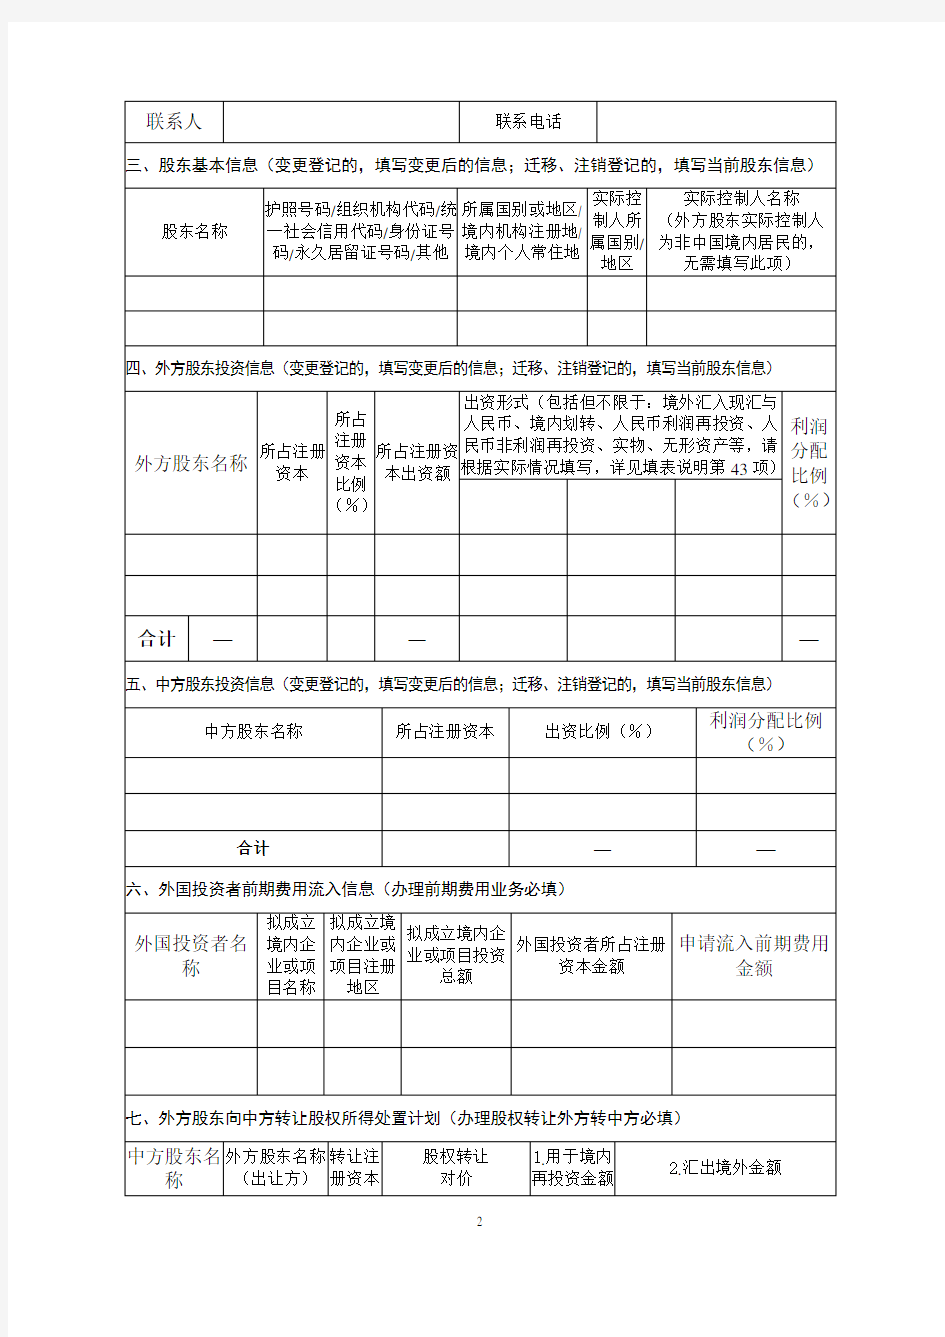 表1：境内直接投资基本信息登记业务申请表(一)